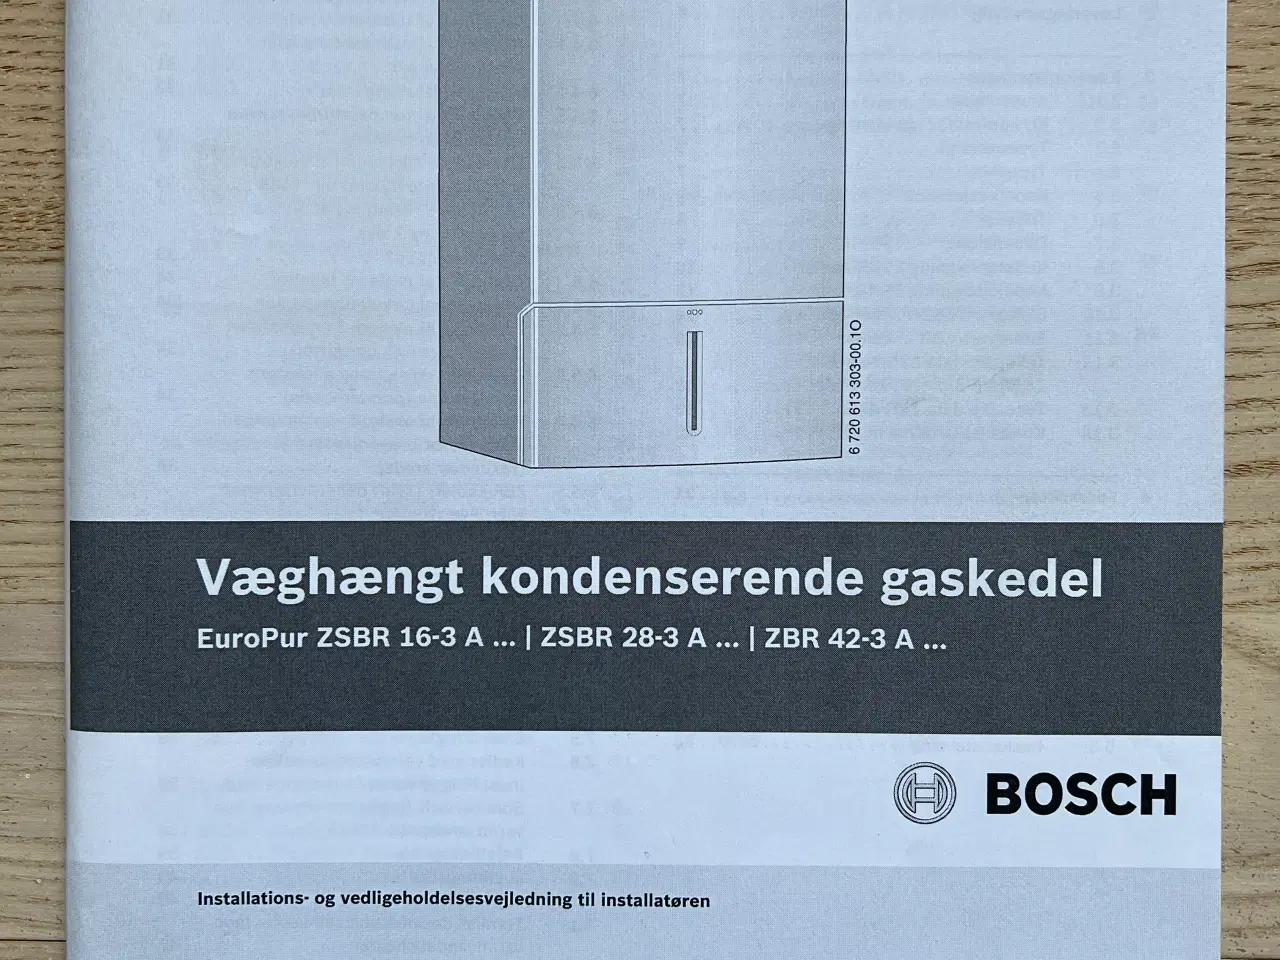 Billede 6 - Bosch EuroPur væghængt kondenserende gaskedel